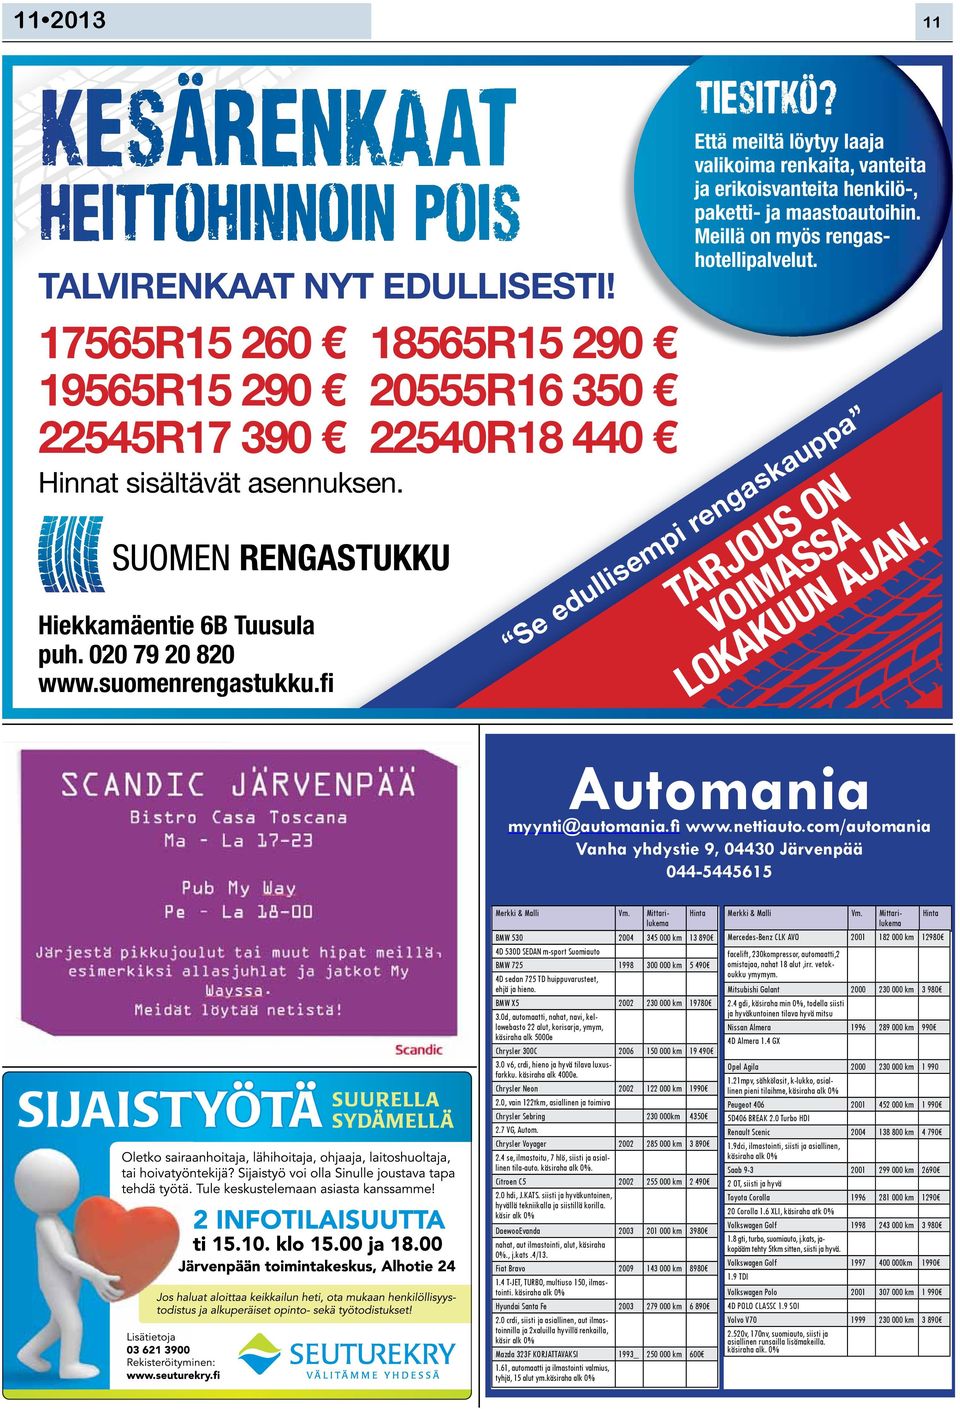 Meillä on myös rengashotellipalvelut. TARJOUS ON VOIMASSA Se edullisempi rengaskauppa LOKAKUUN AJAN. Automania myynti@automania.fi www.nettiauto.